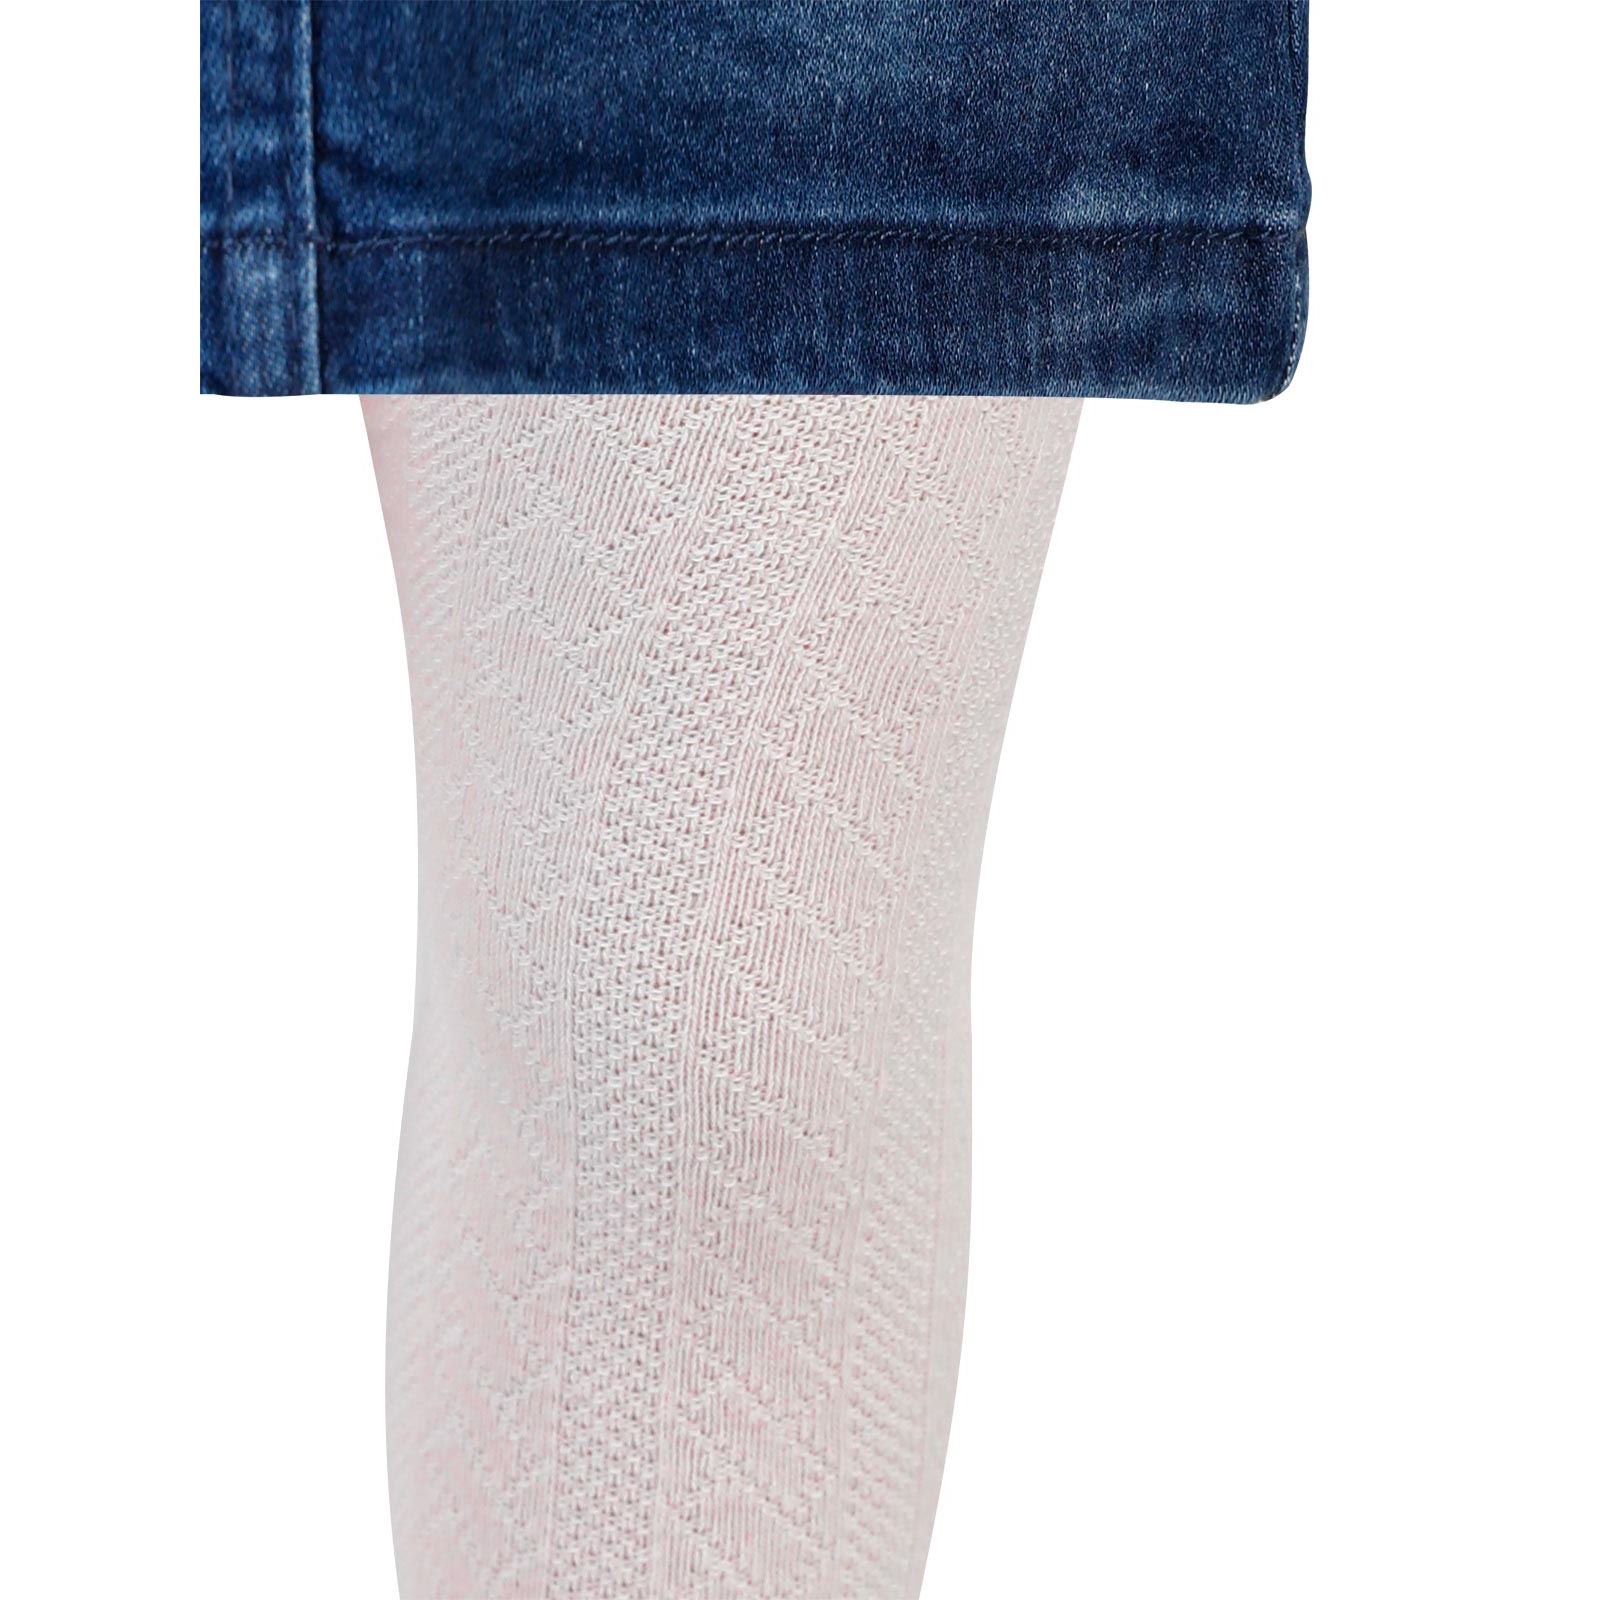 Artı Kız Bebek Külotlu Çorap 6-18 Ay Pembe